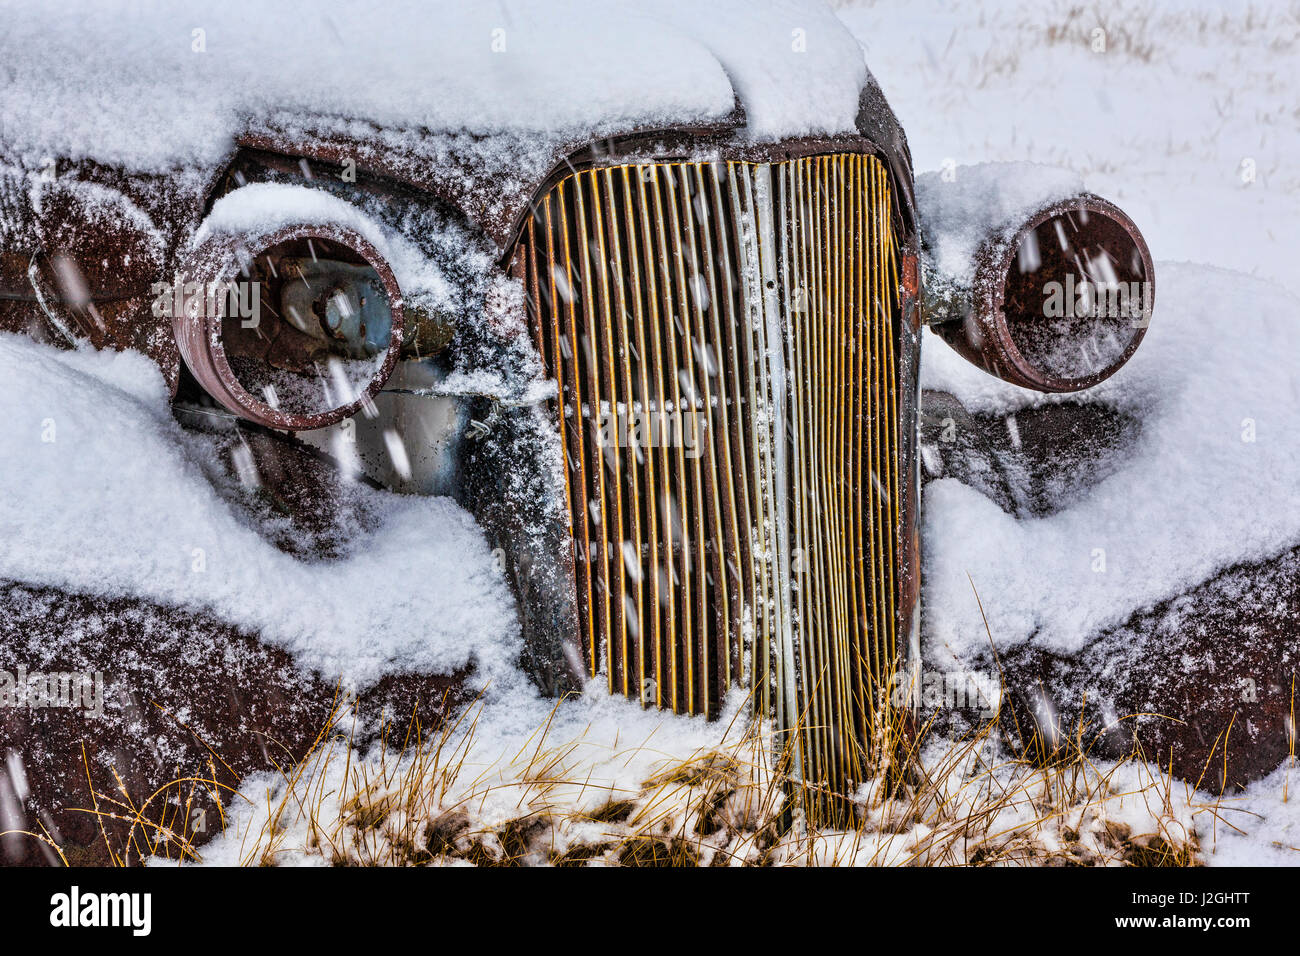 California, Estados Unidos, Bodie. Close-up de automóviles antiguos de cuerpo en la nieve. Crédito: Don Paulson Jaynes / Galería / DanitaDelimont.com Foto de stock